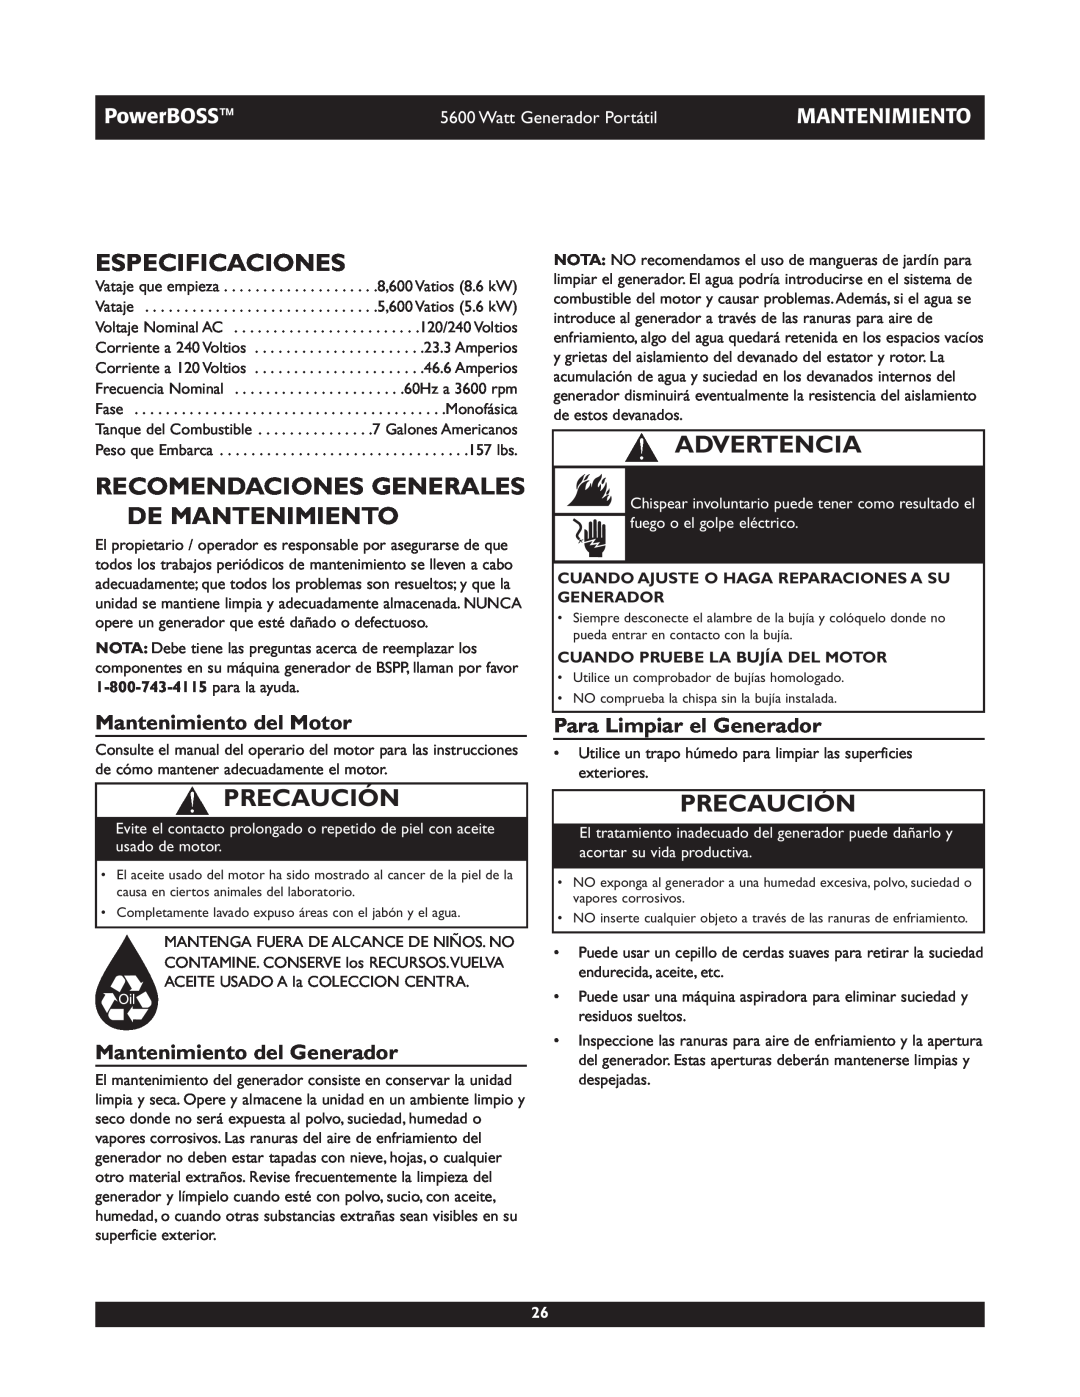 Briggs & Stratton 30230 Especificaciones, Recomendaciones Generales De Mantenimiento, Mantenimiento del Motor, Advertencia 